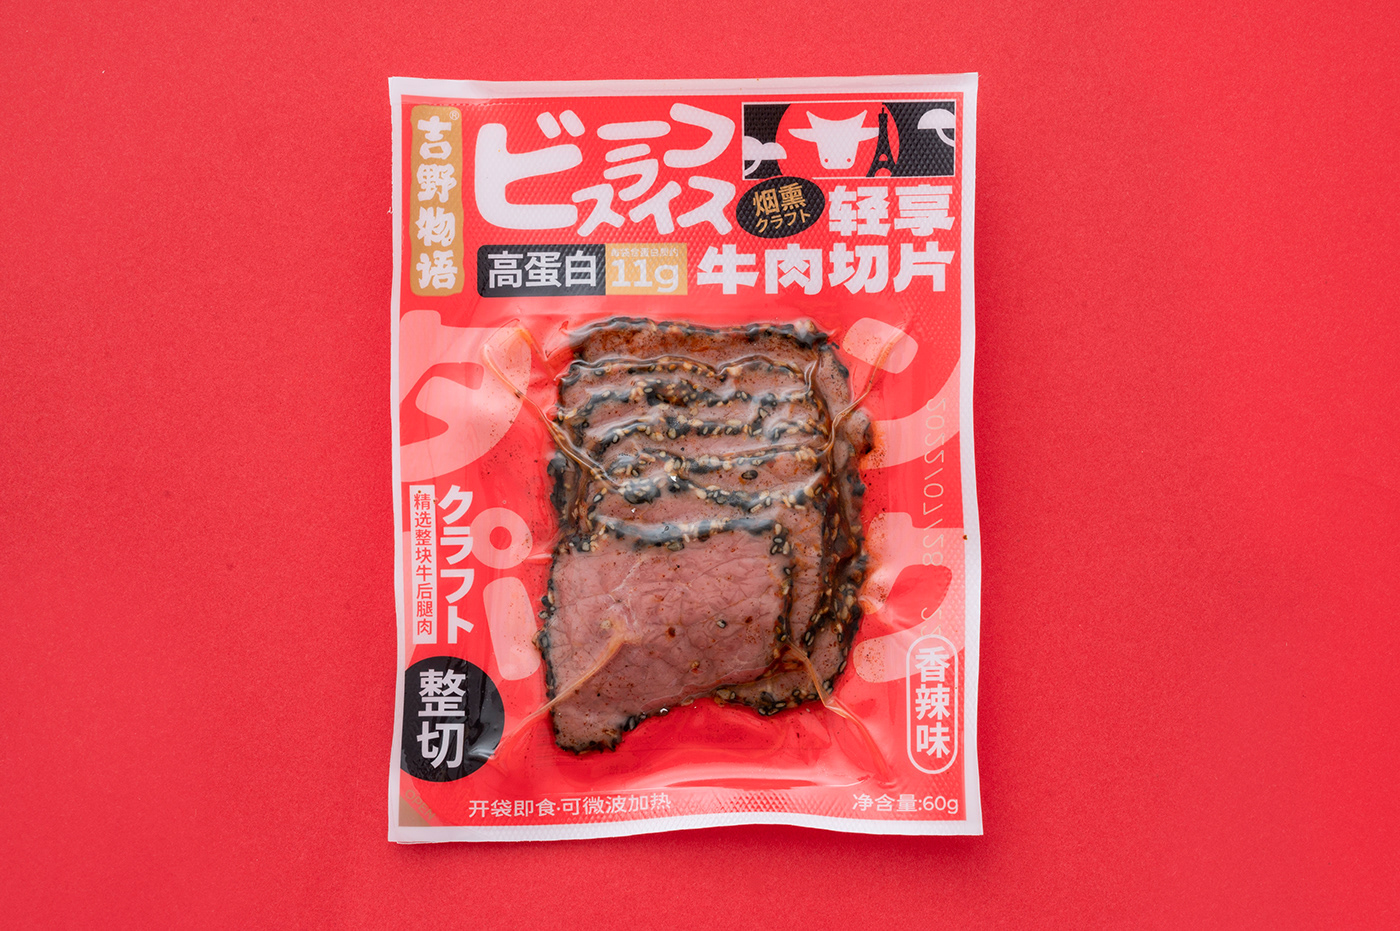 beef Food  meat Packaging steak